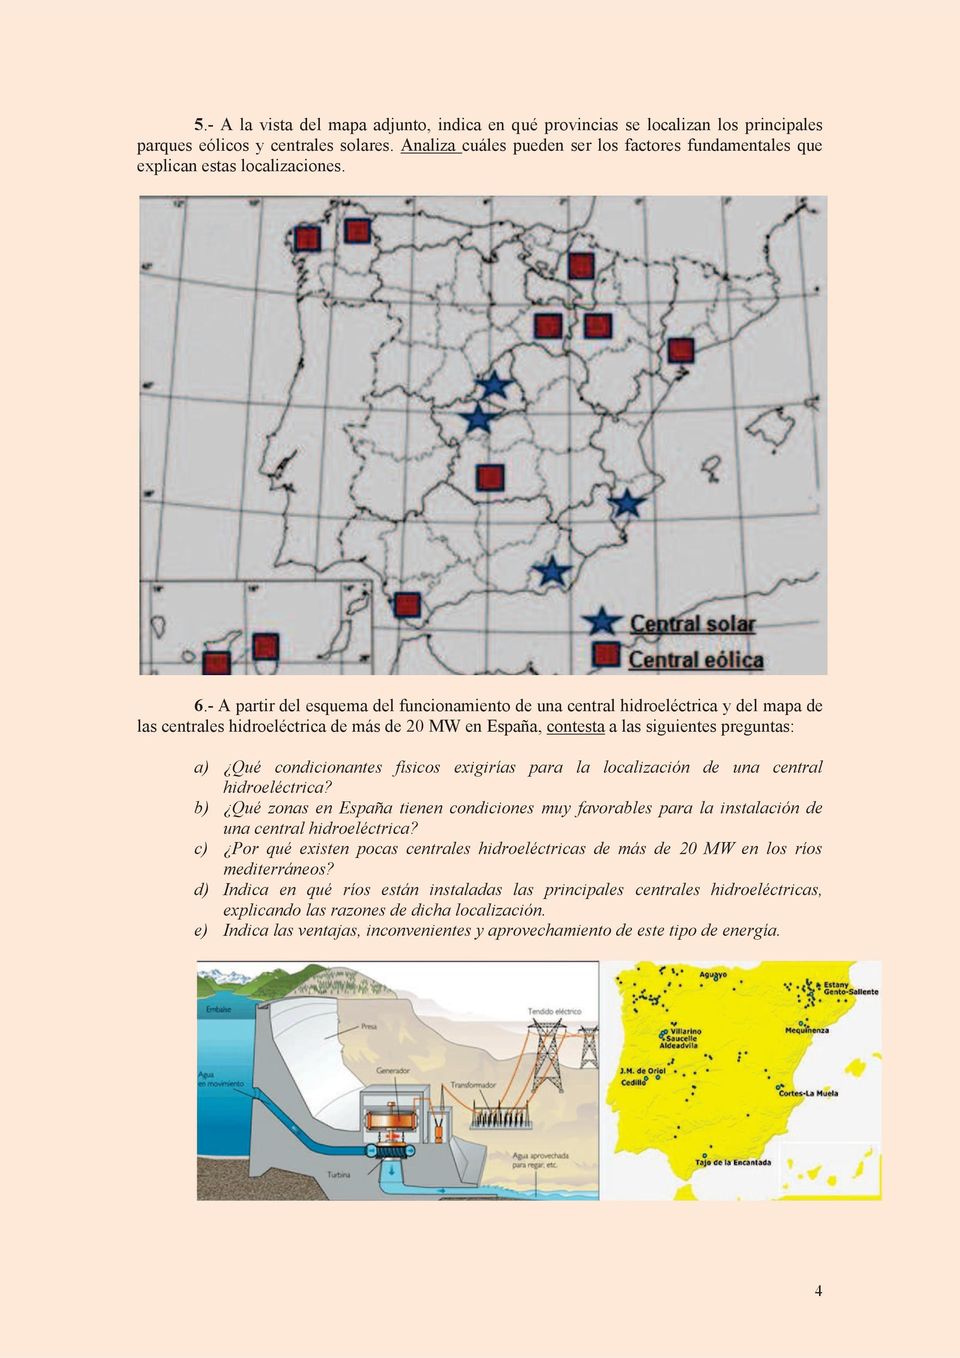 - A partir del esquema del funcionamiento de una central hidroeléctrica y del mapa de las centrales hidroeléctrica de más de 20 MW en España, contesta a las siguientes preguntas: a) Qué